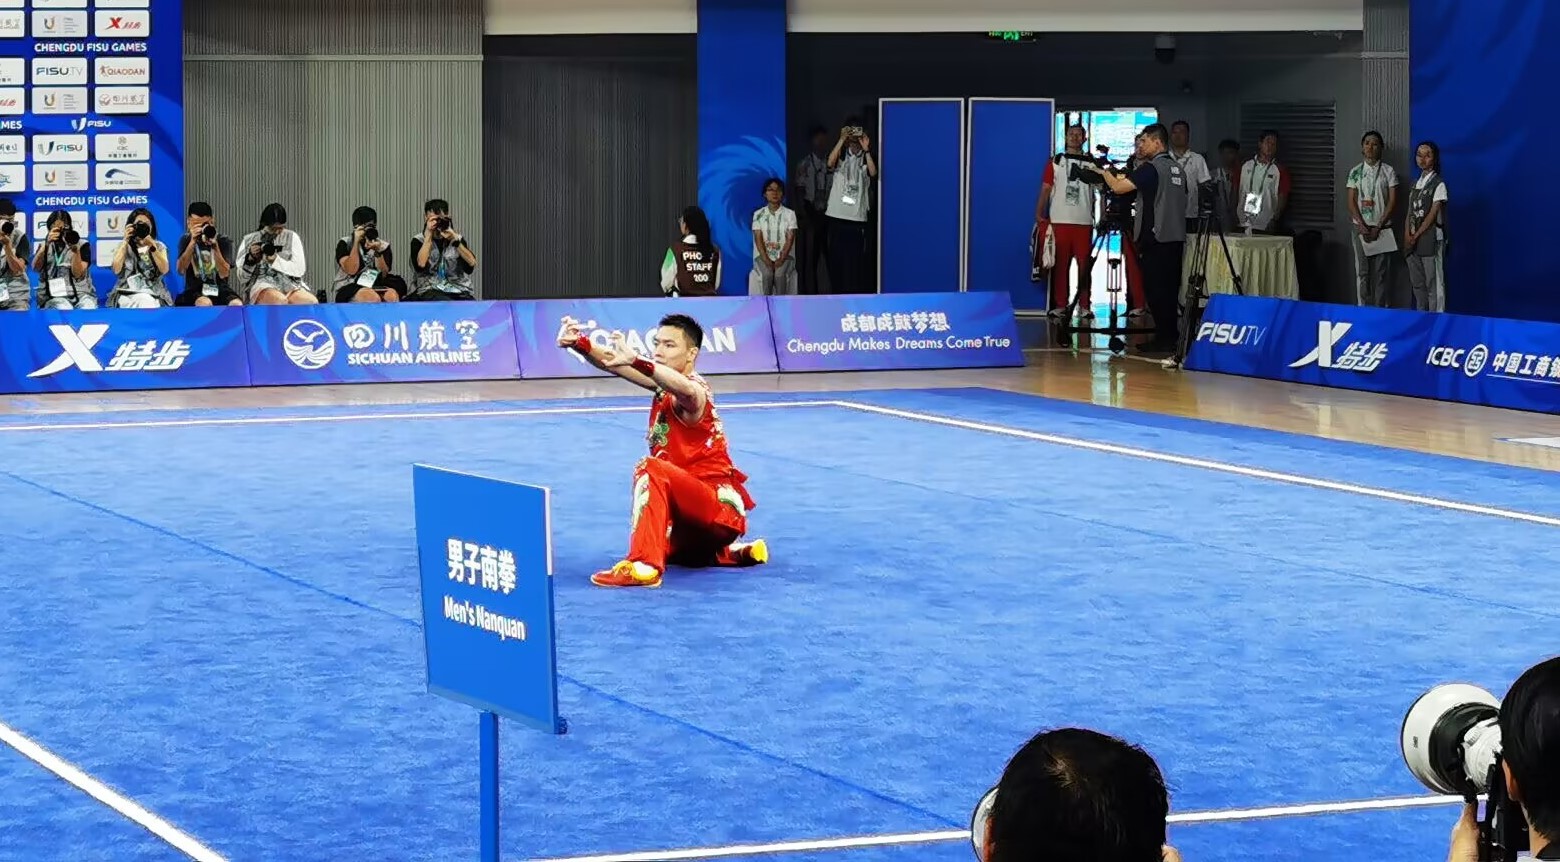 曹茂园在成都大运会武术项目男子南拳比赛中。 人民网记者 杨磊摄